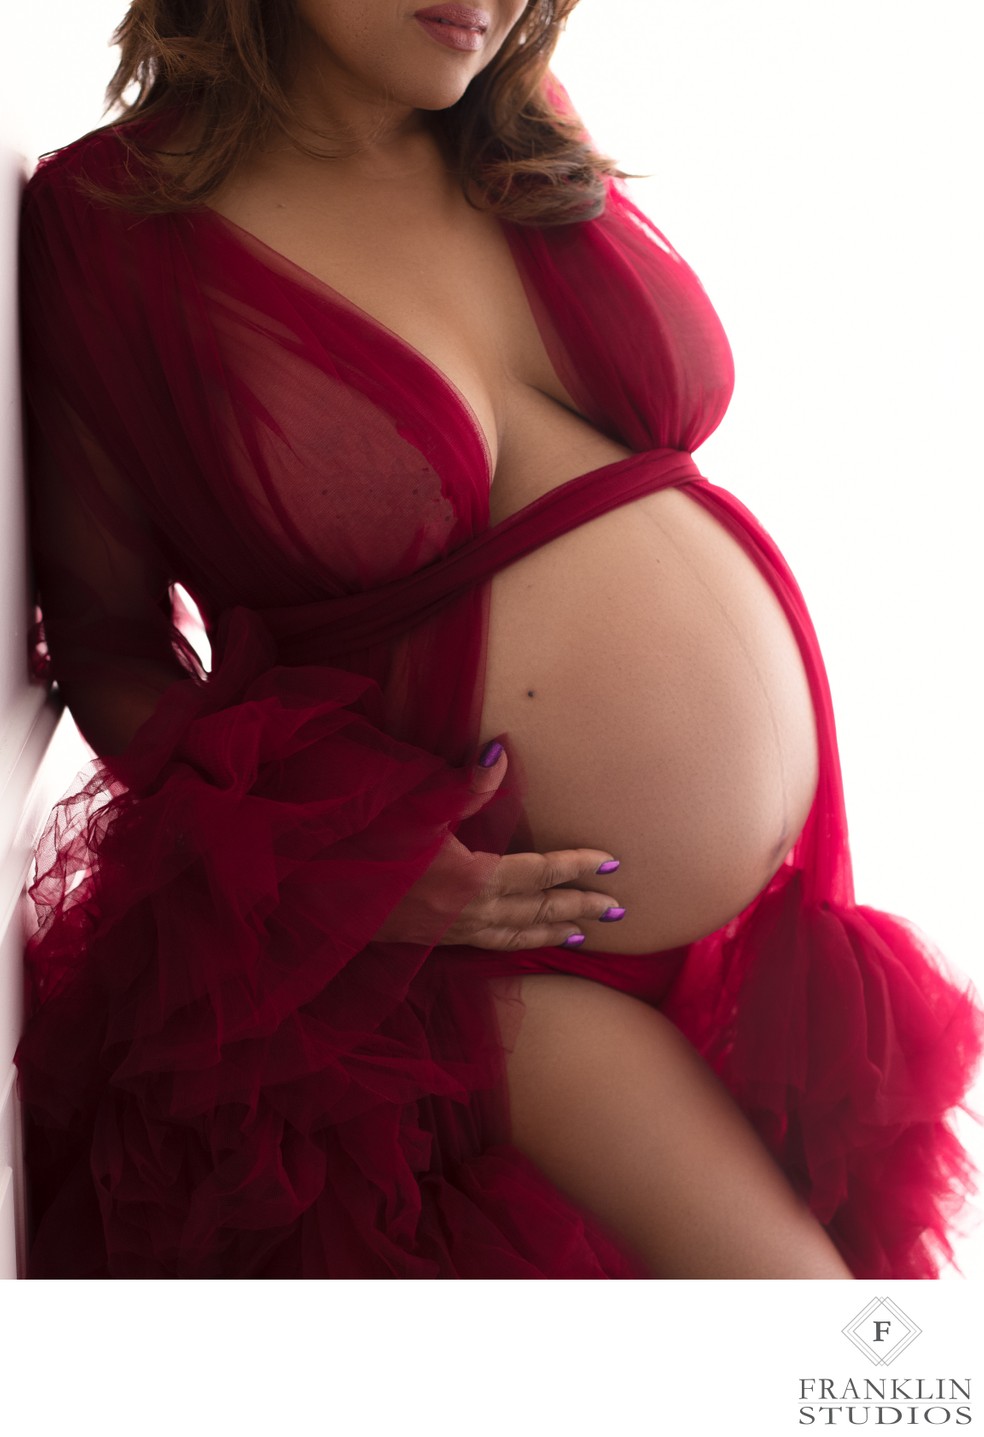 Sexy Pregnant Belly Photos